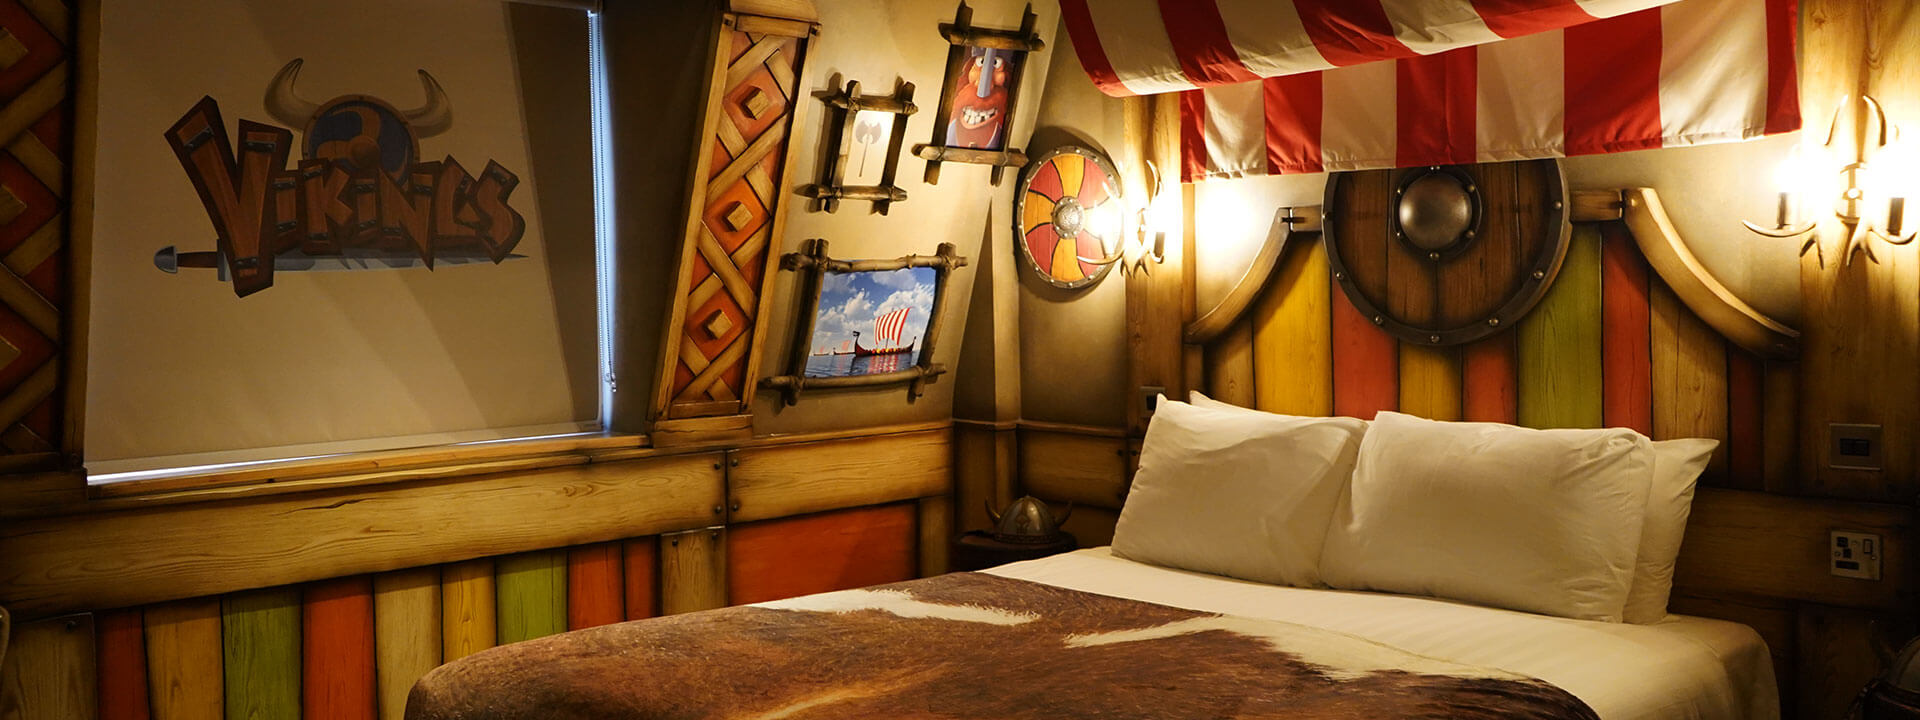 Vikings Hotel Room